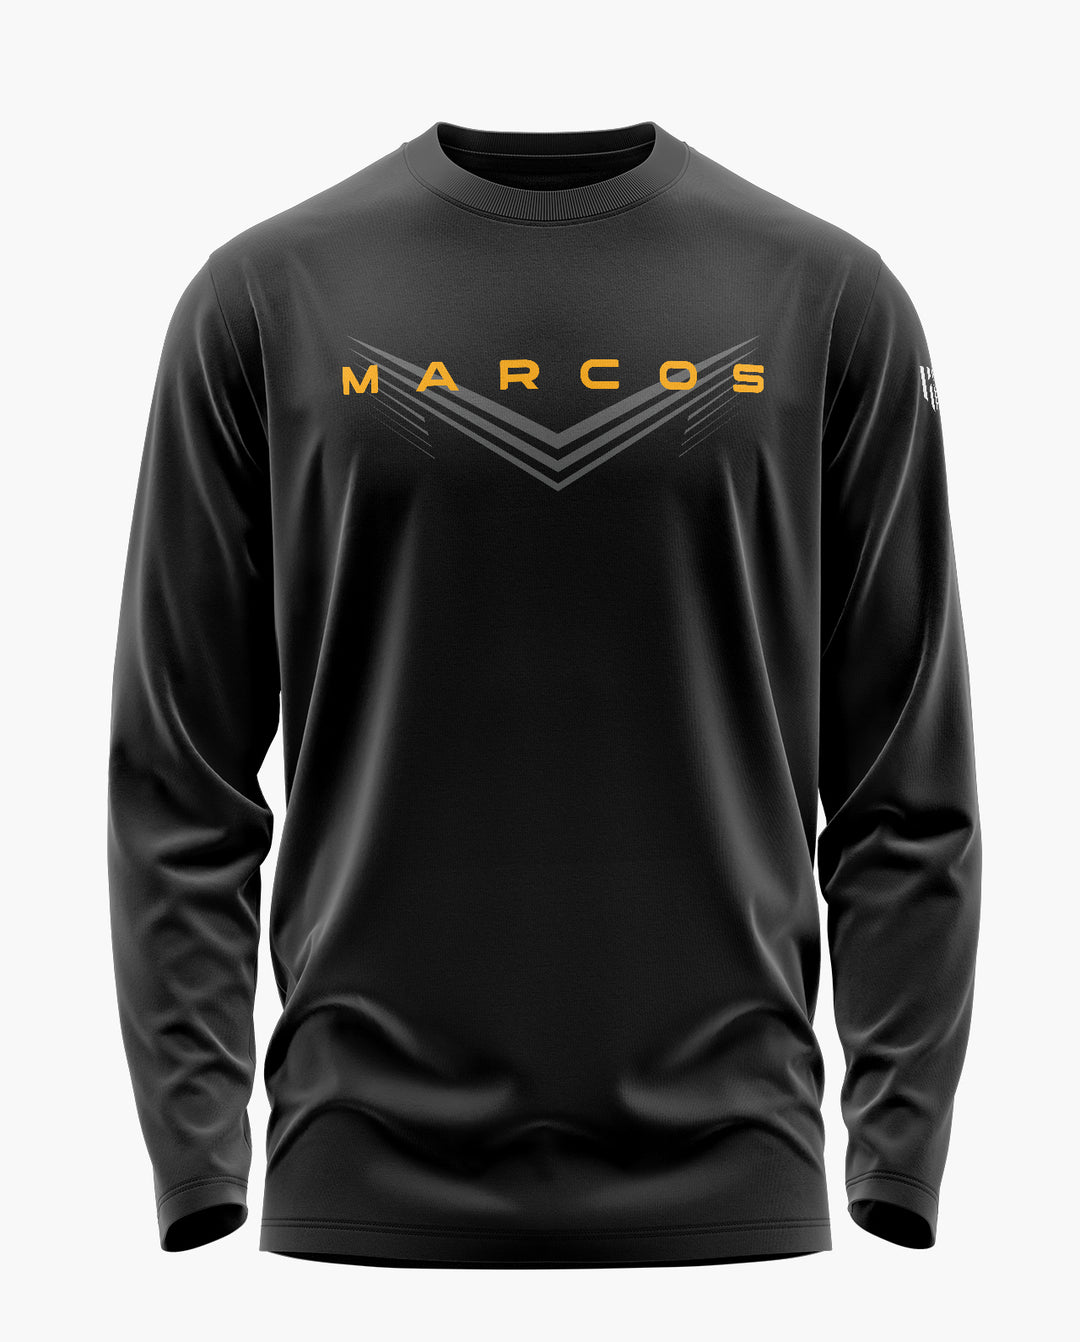 MARCOS Elite Full Sleeve T-Shirt